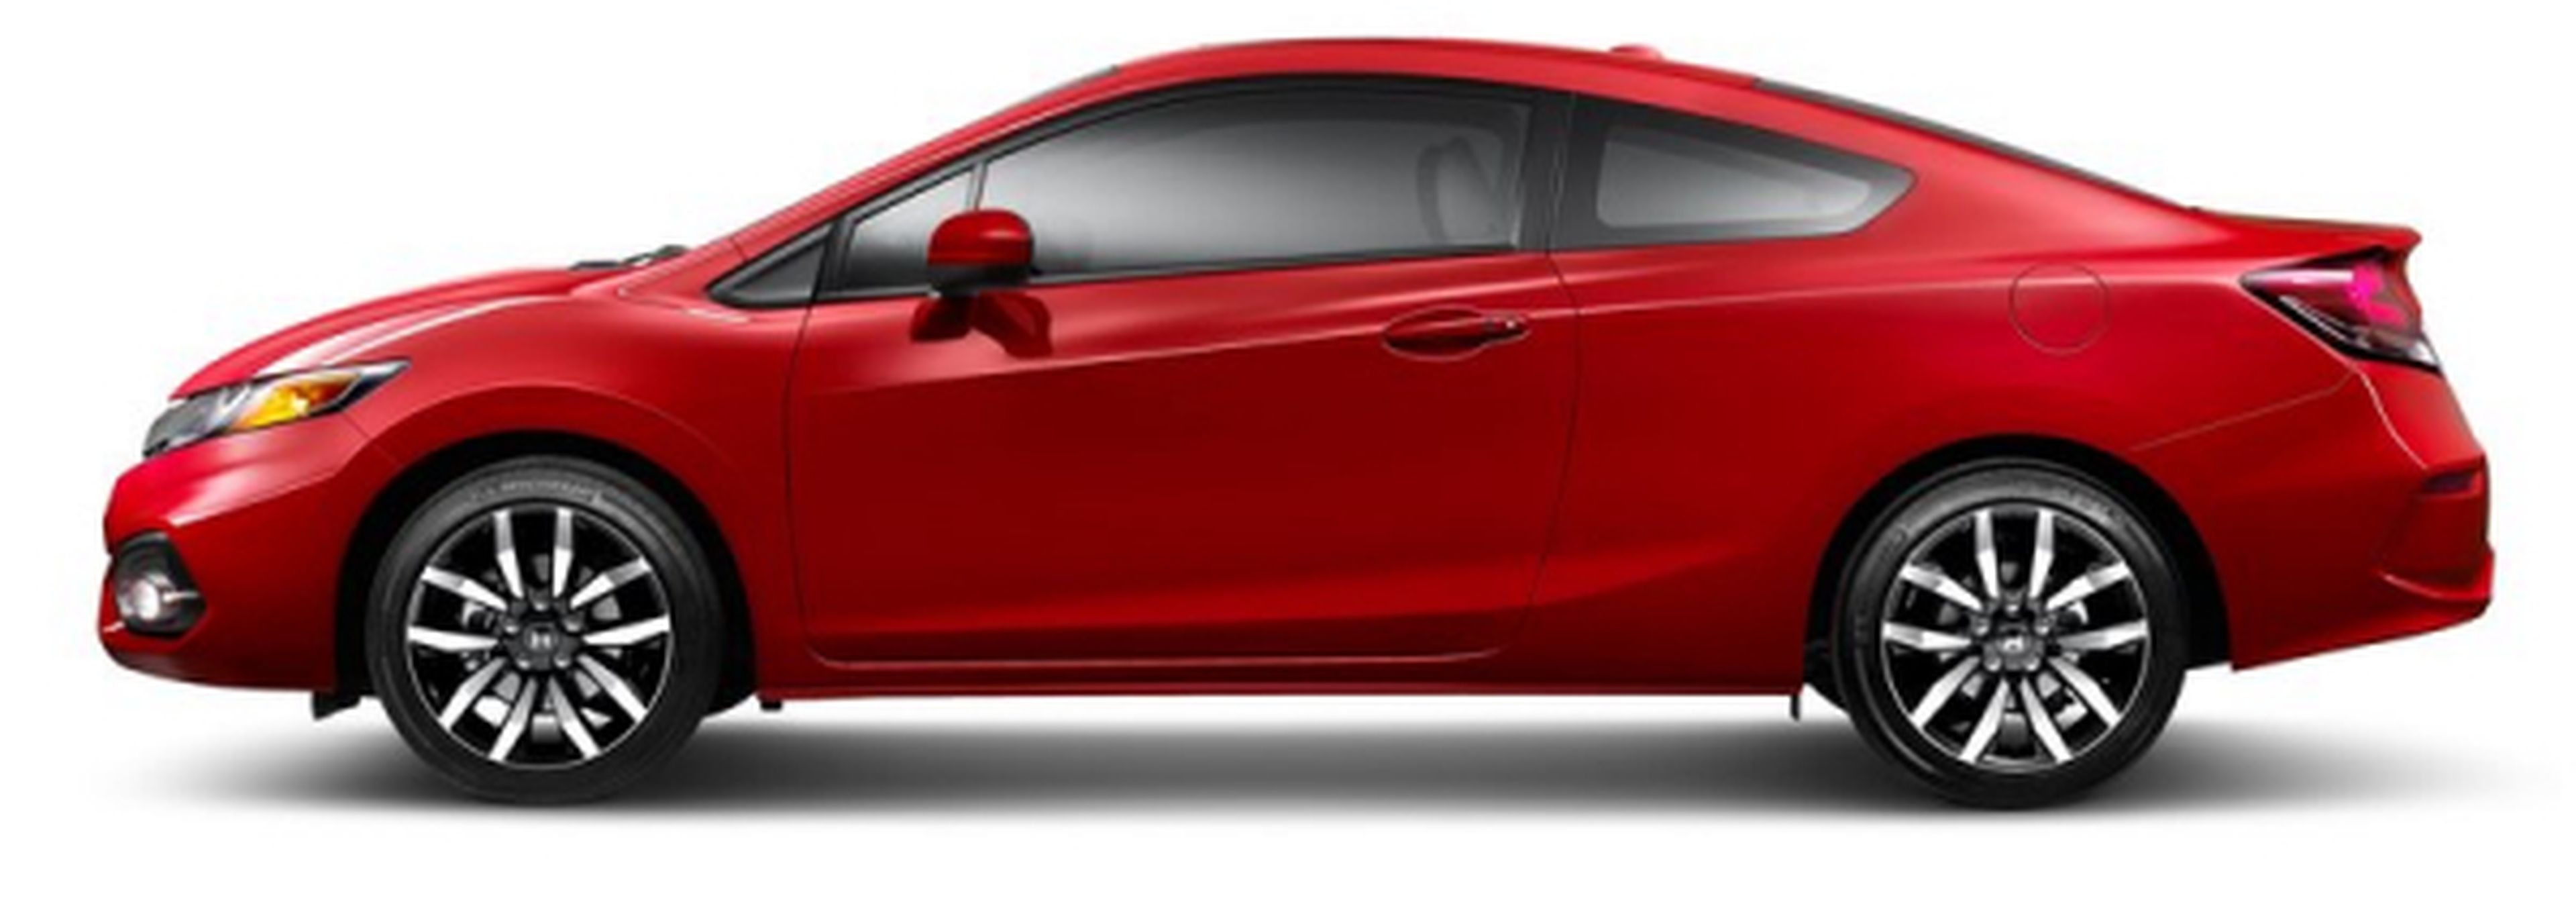 Honda Civic Coupe 2016: cazado por primera vez